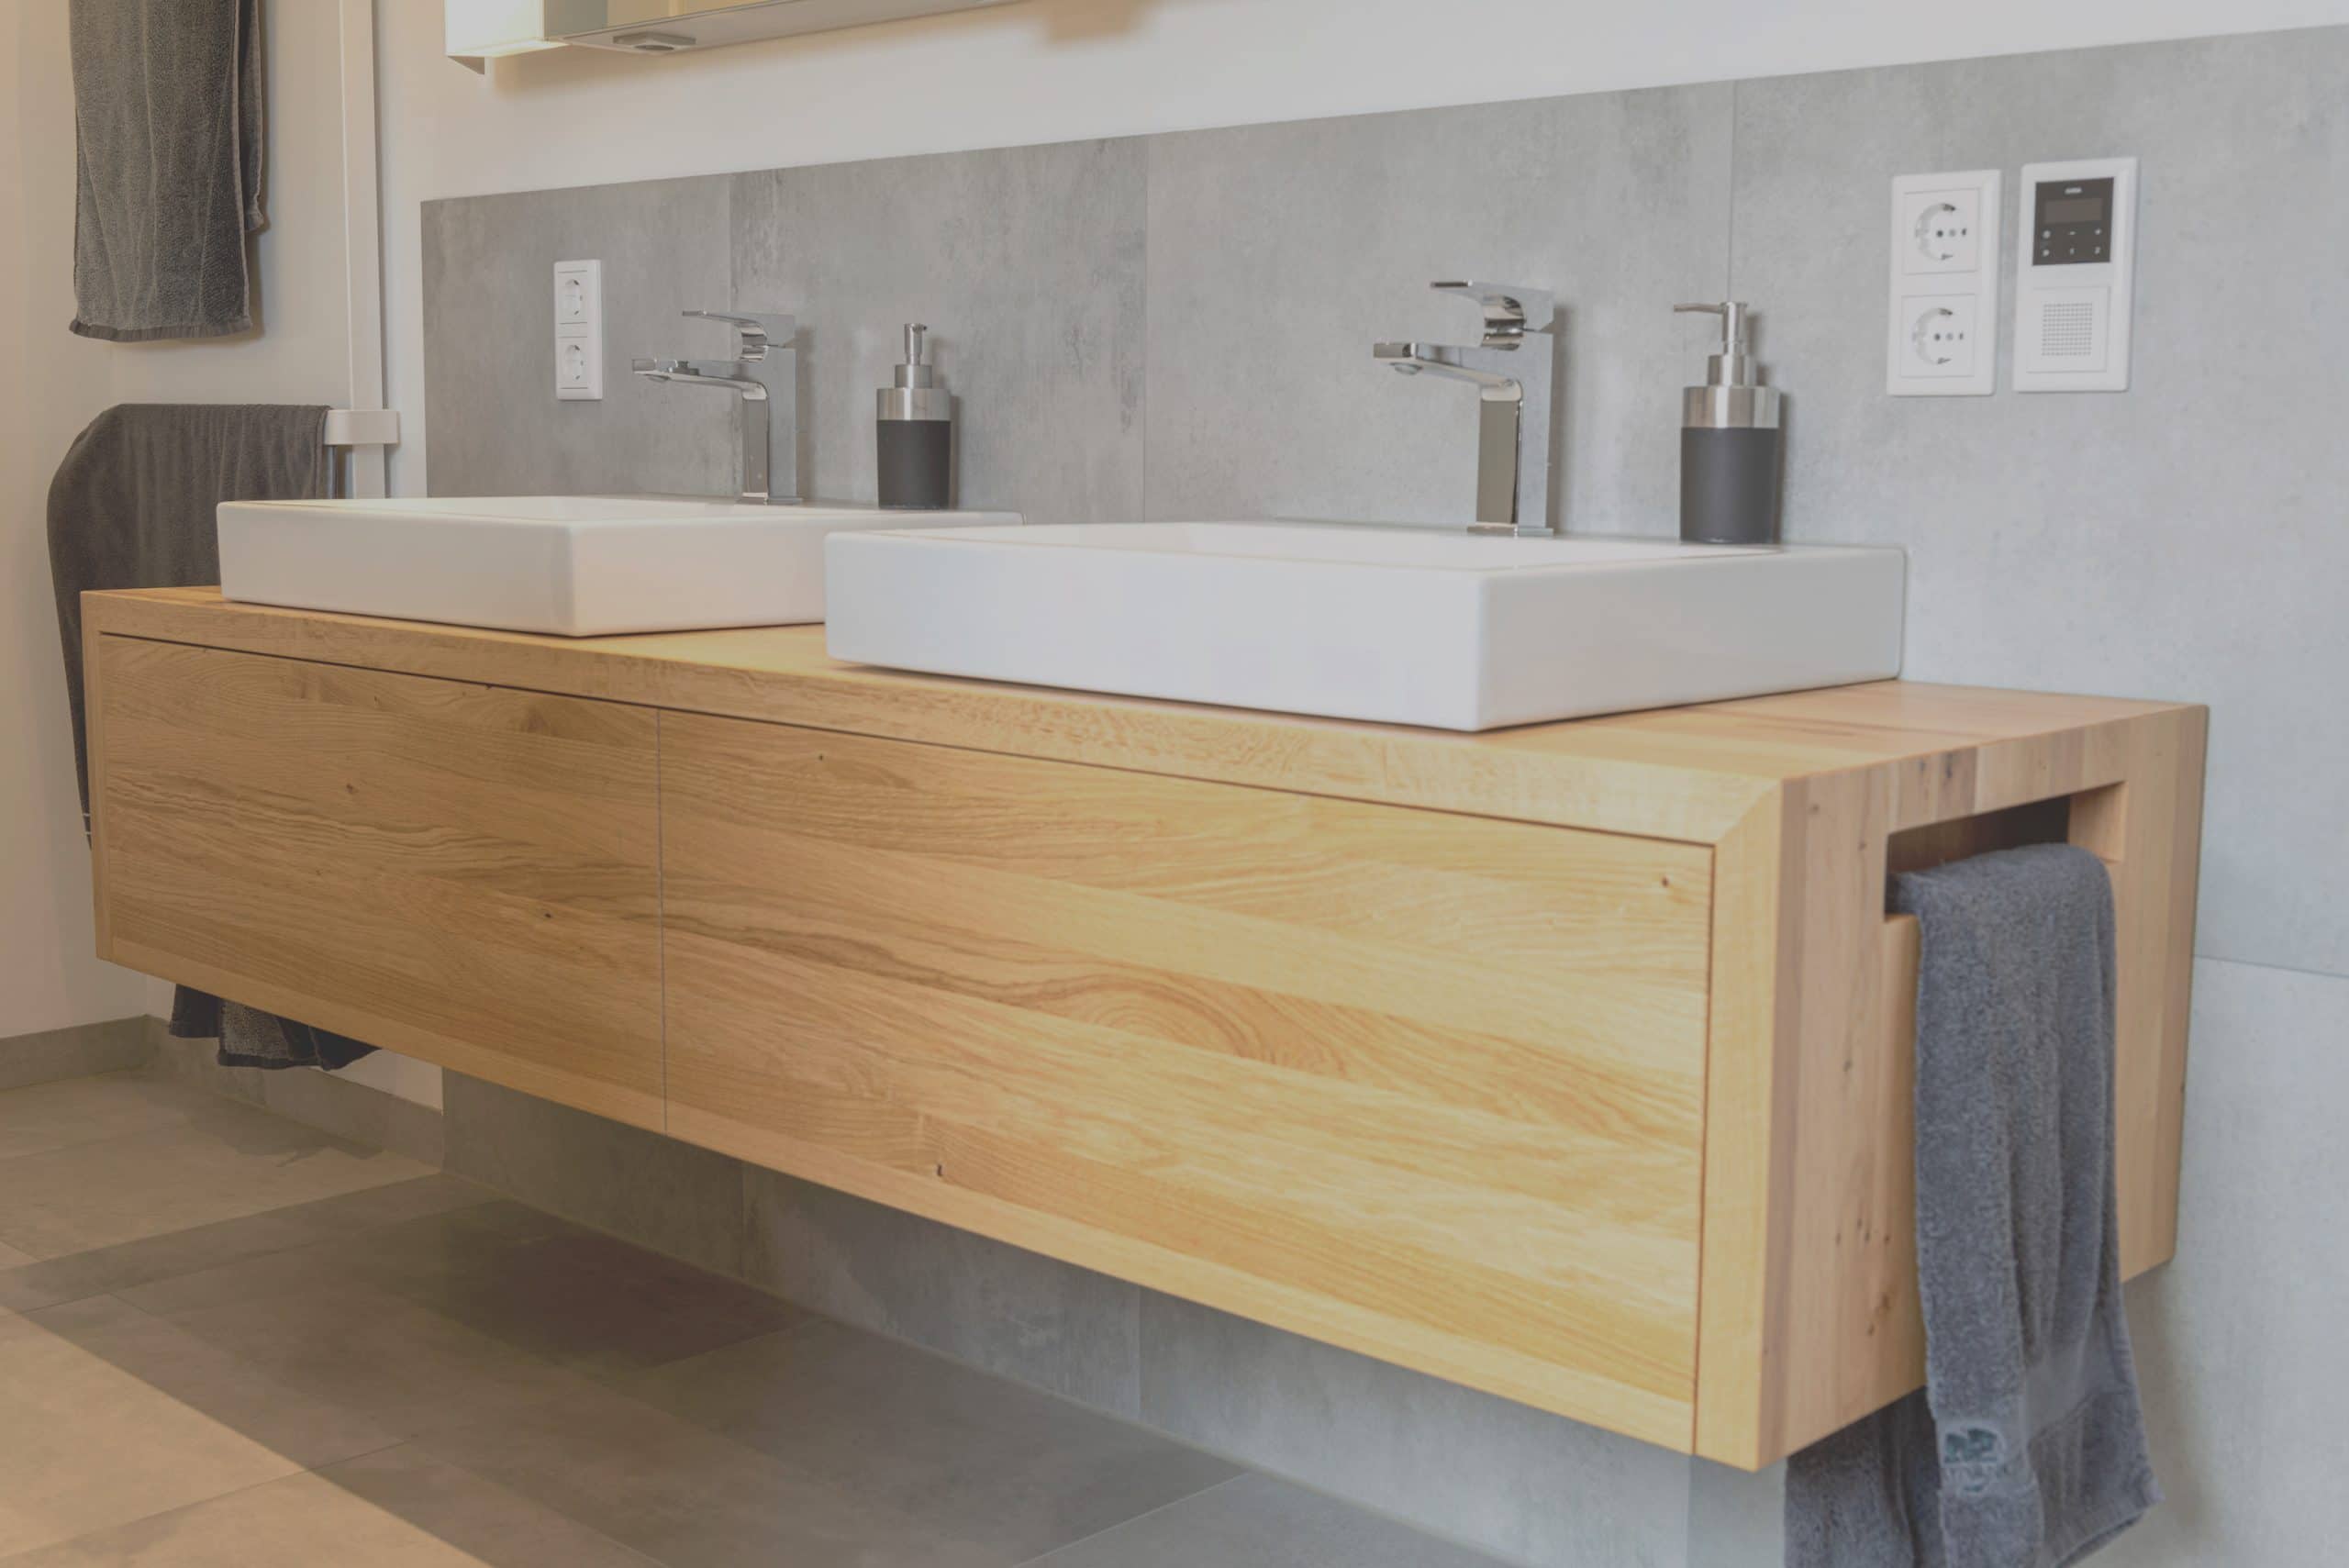 Grootste Onzeker Los Hout behandelen badkamer | Waterbestendig hout in badkamer | Osmo